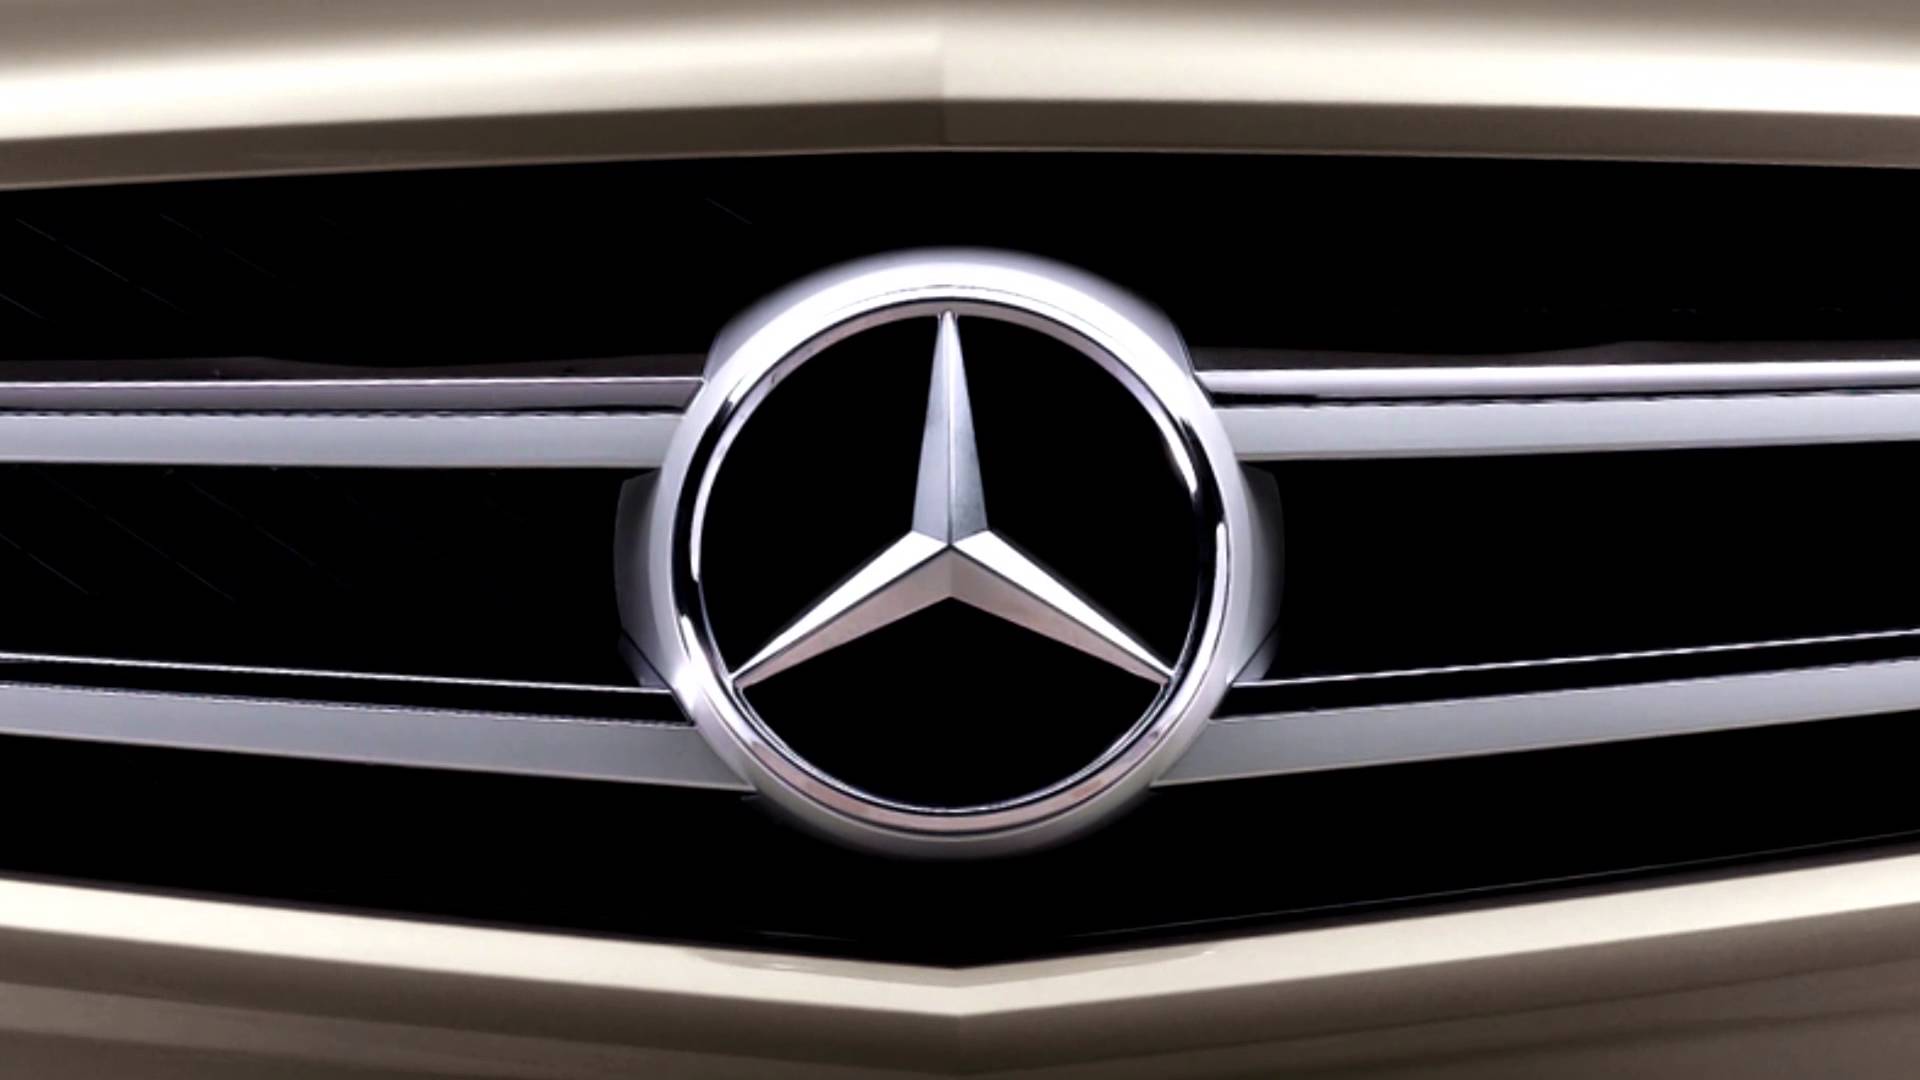 Mercedes Benz Wallpaper Download